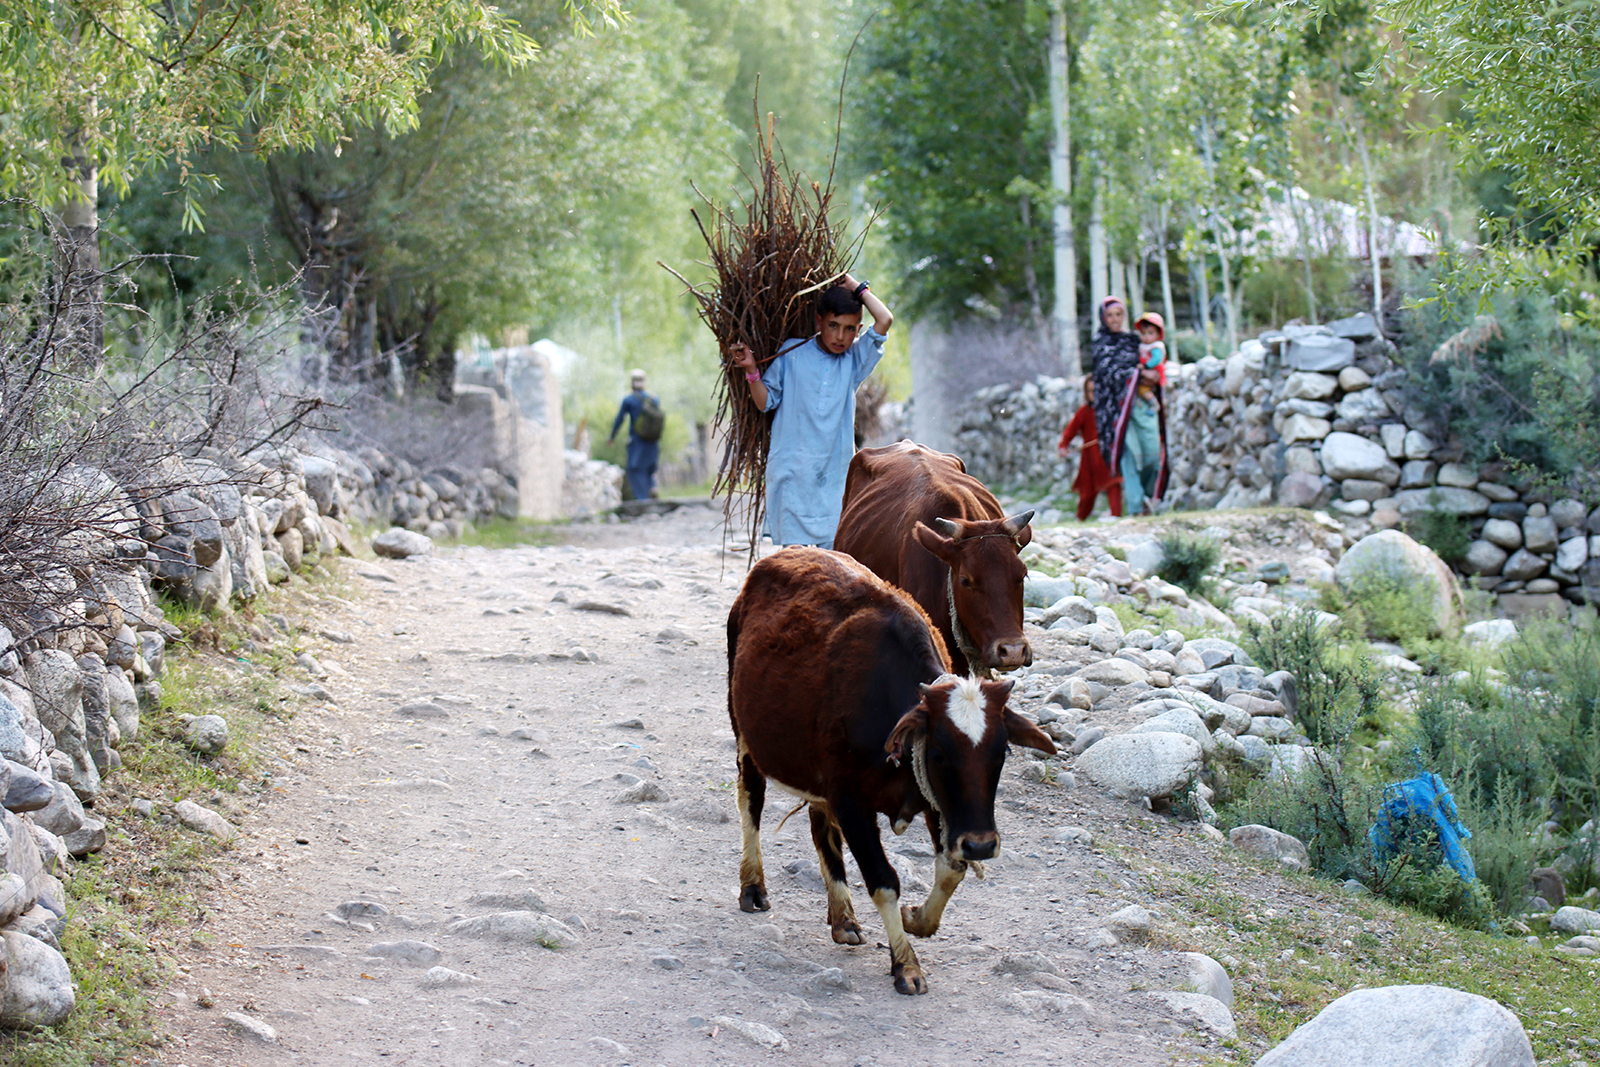 Zdjęcie chłopca i krów w regionie Gilgit-Baltistan w Pakistanie autorstwa Anny Wilanowskiej